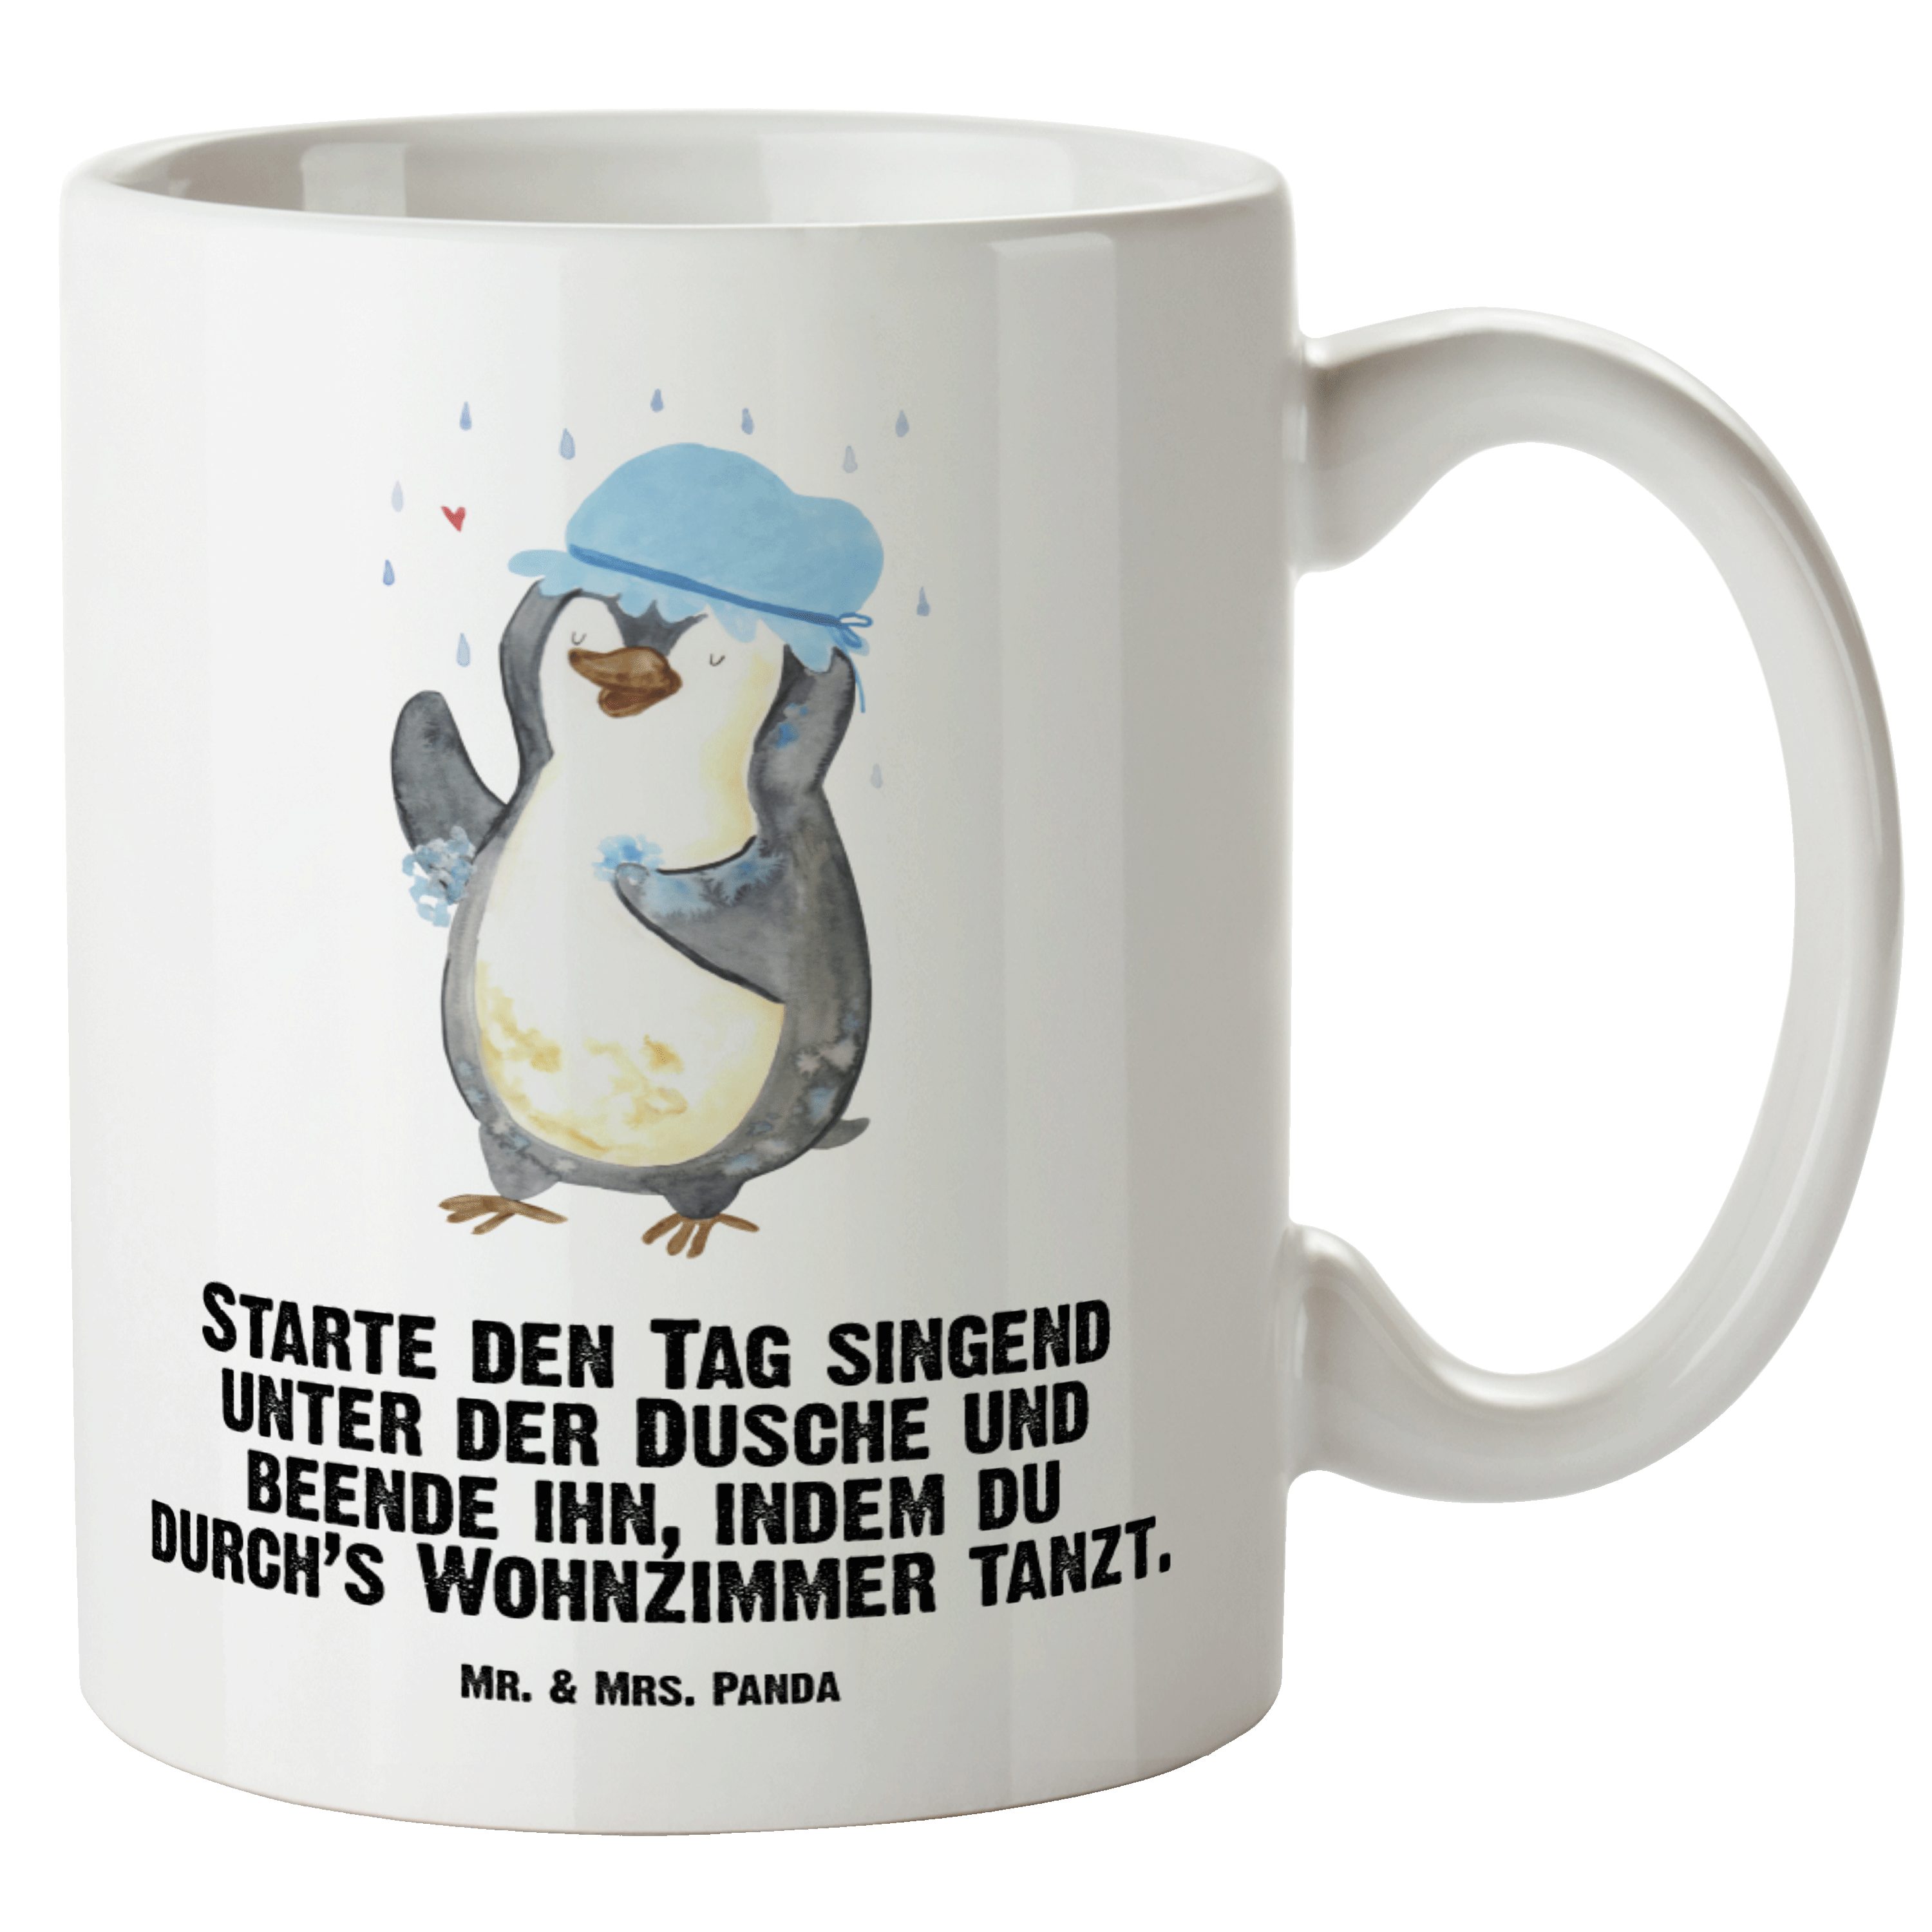 Mr. & Mrs. Panda Tasse Pinguin duscht - Weiß - Geschenk, Grosse Kaffeetasse, glücklich sein, XL Tasse Keramik